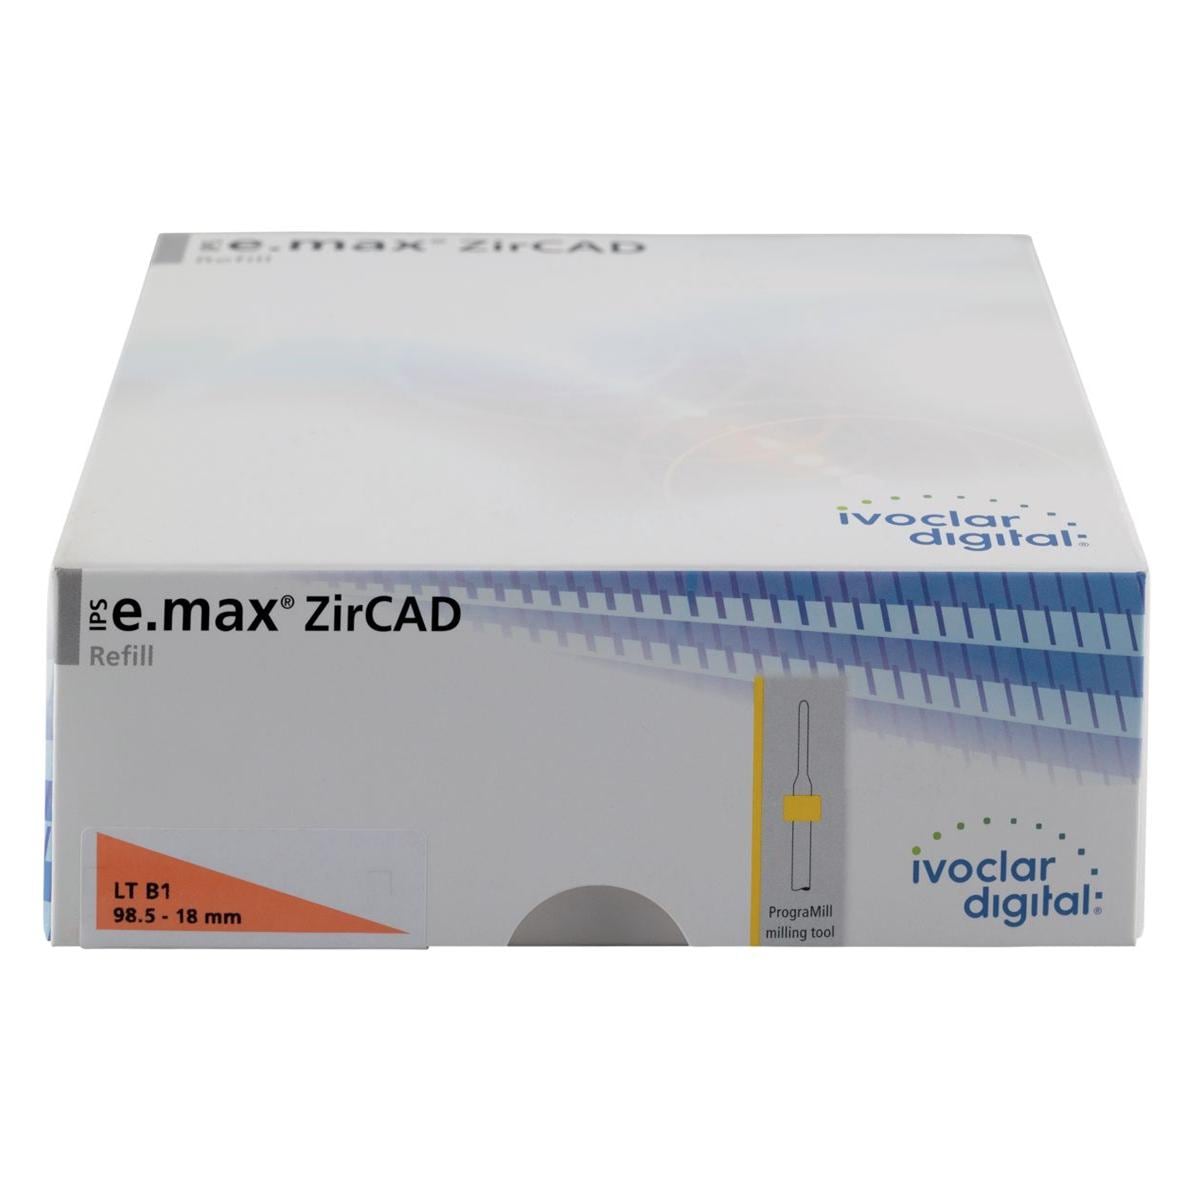 IPS e.max ZirCAD LT B1 98.5x18mm